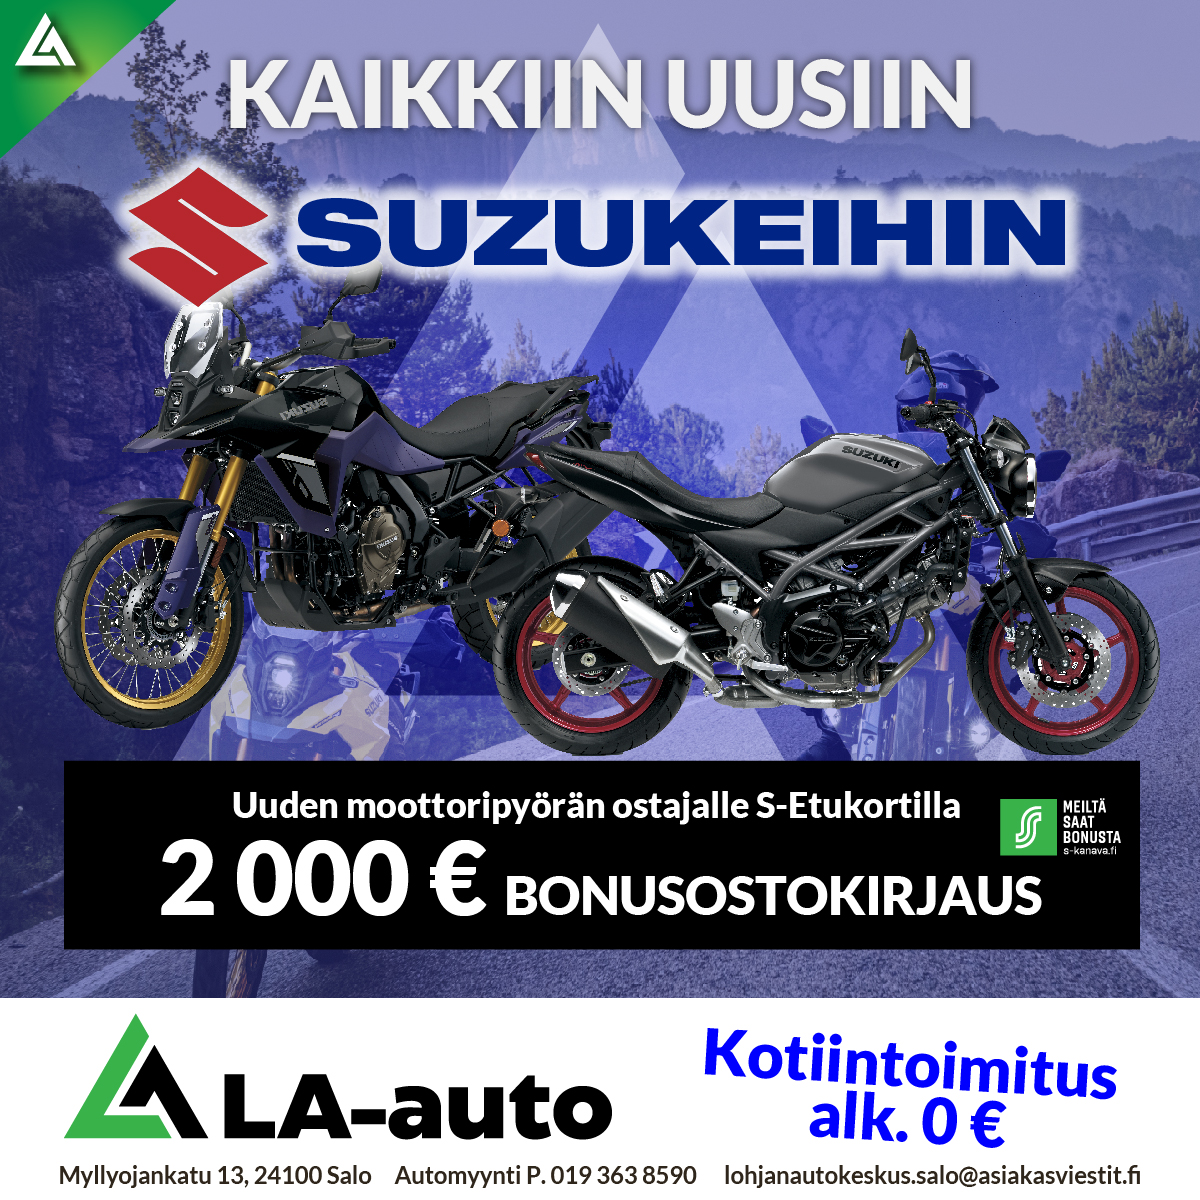 Uuden moottoripyörän ostajalle S-Etukortilla 2000€ bonusostokirjausa